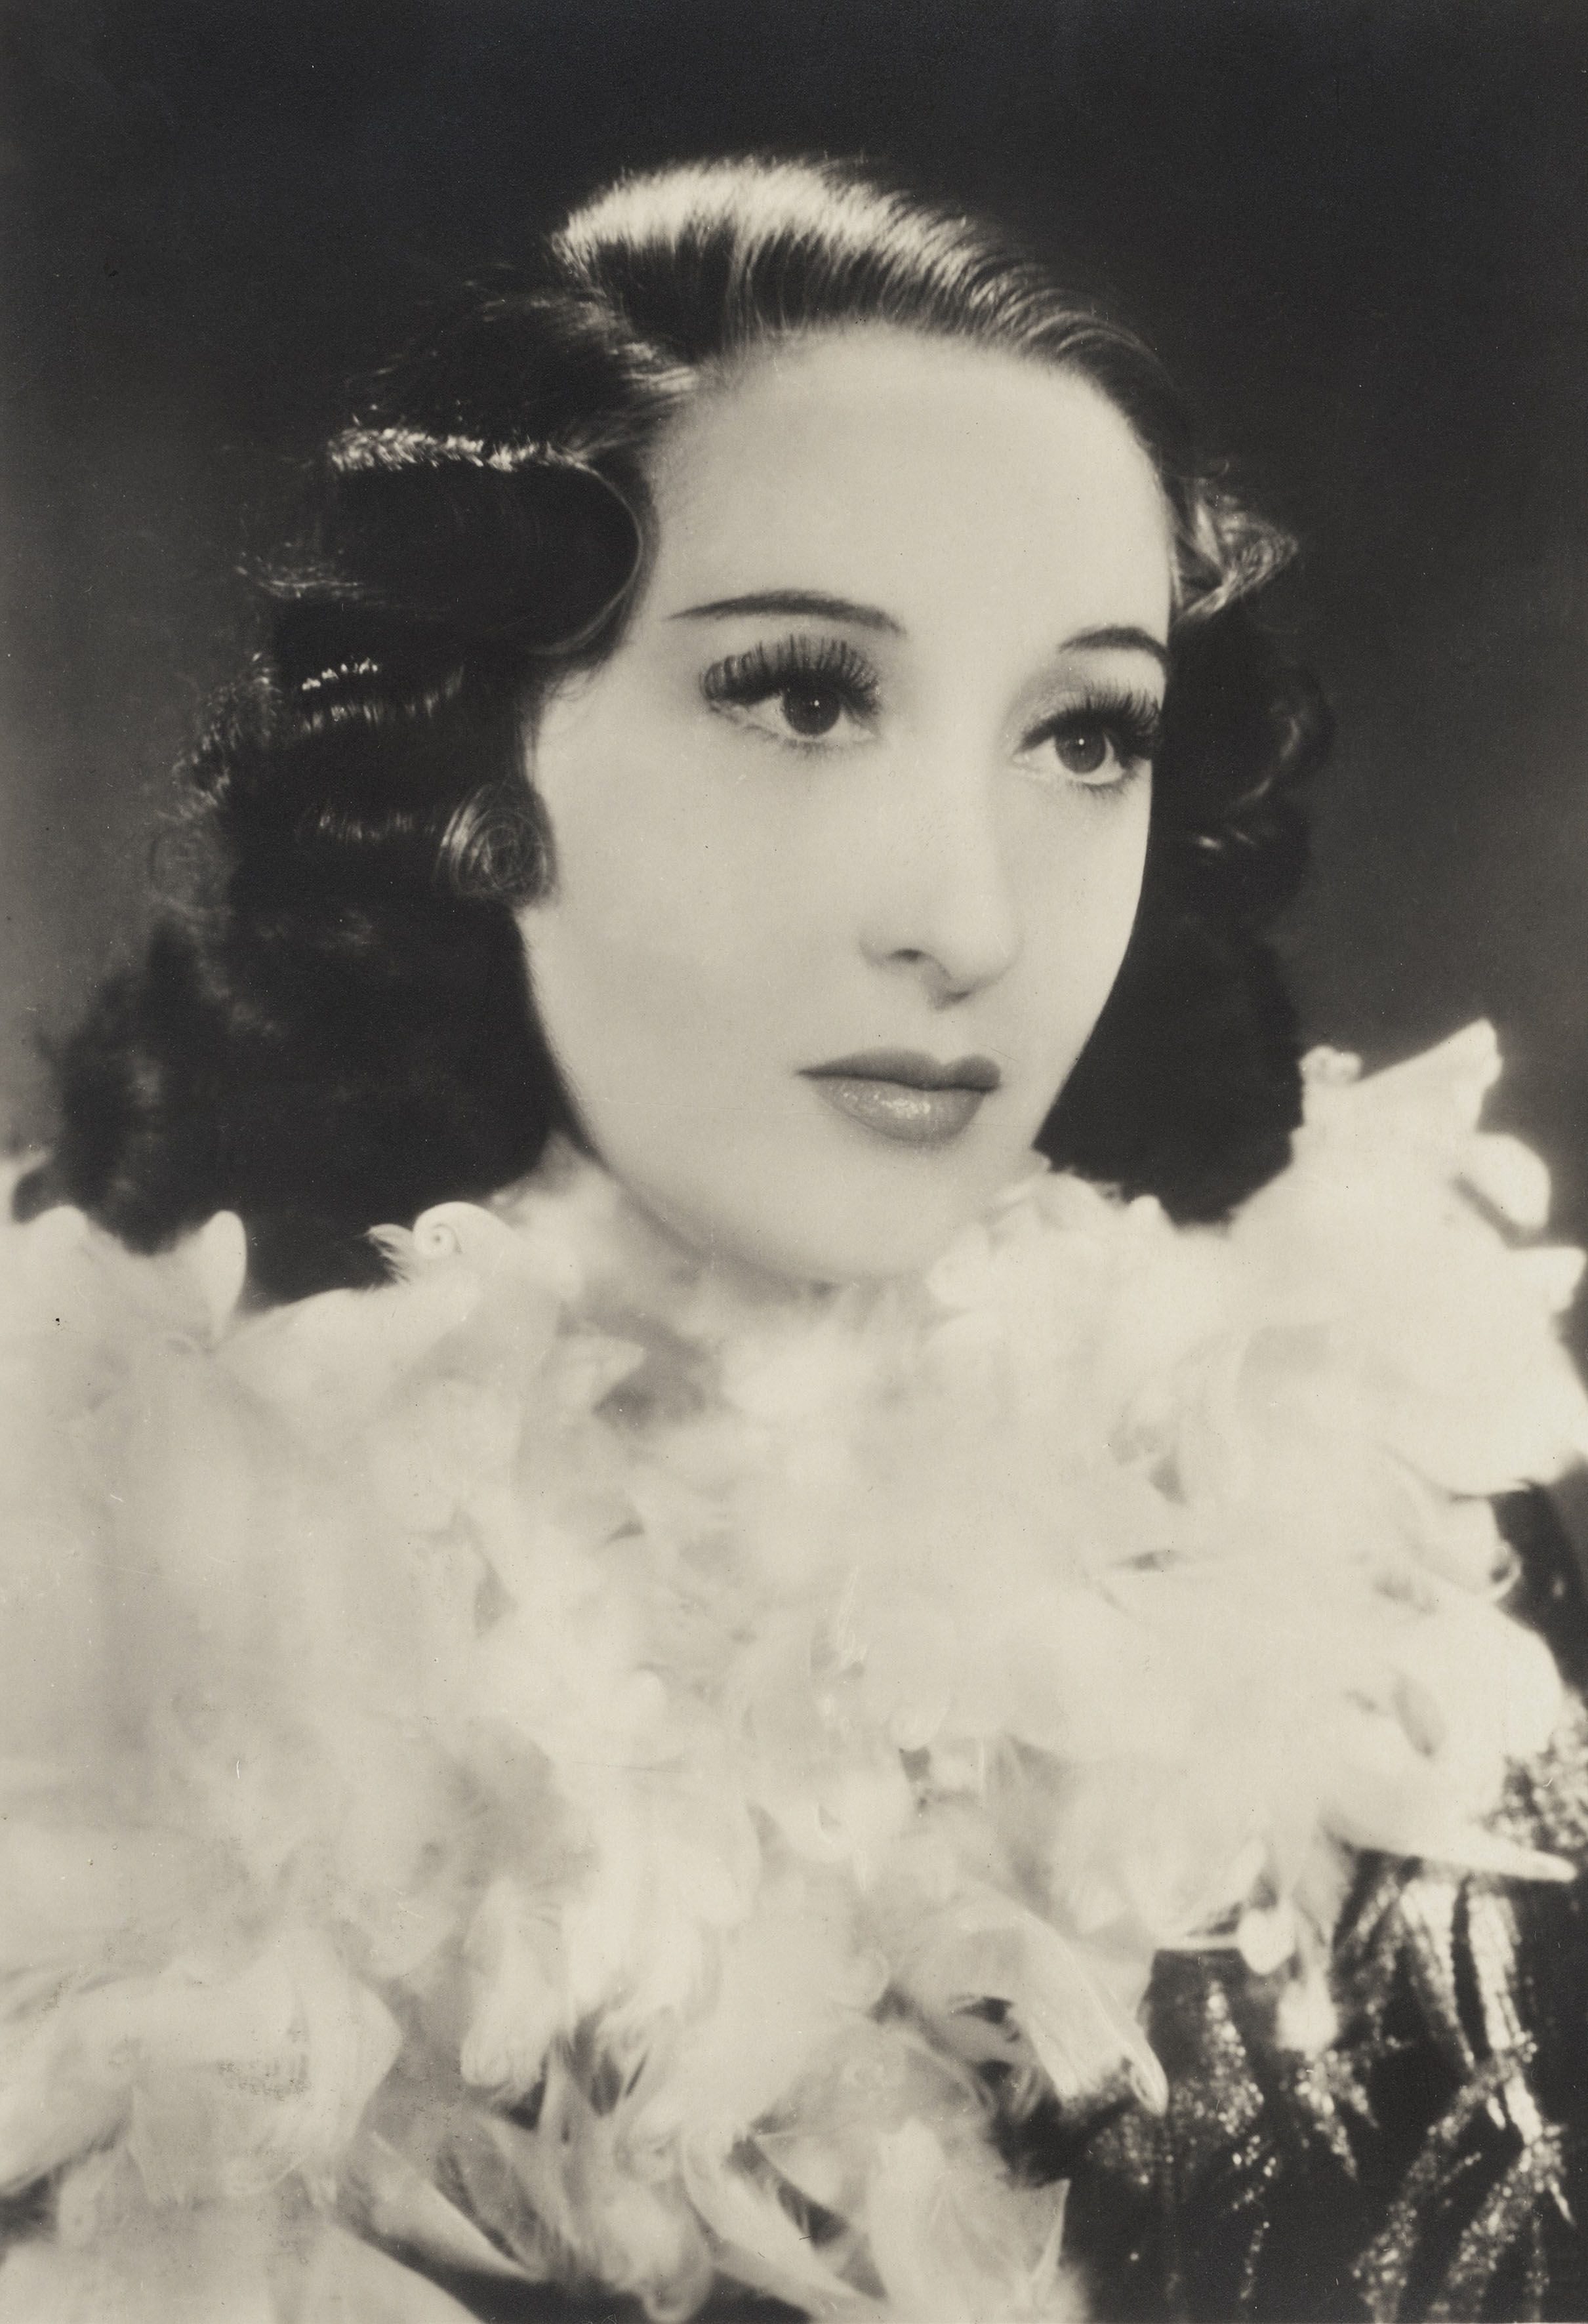 1946. Clara Calamai si aggiudica il Nastro come Migliore attrice protagonista nella prima edizione dei Nastri per il film "L'adultera"